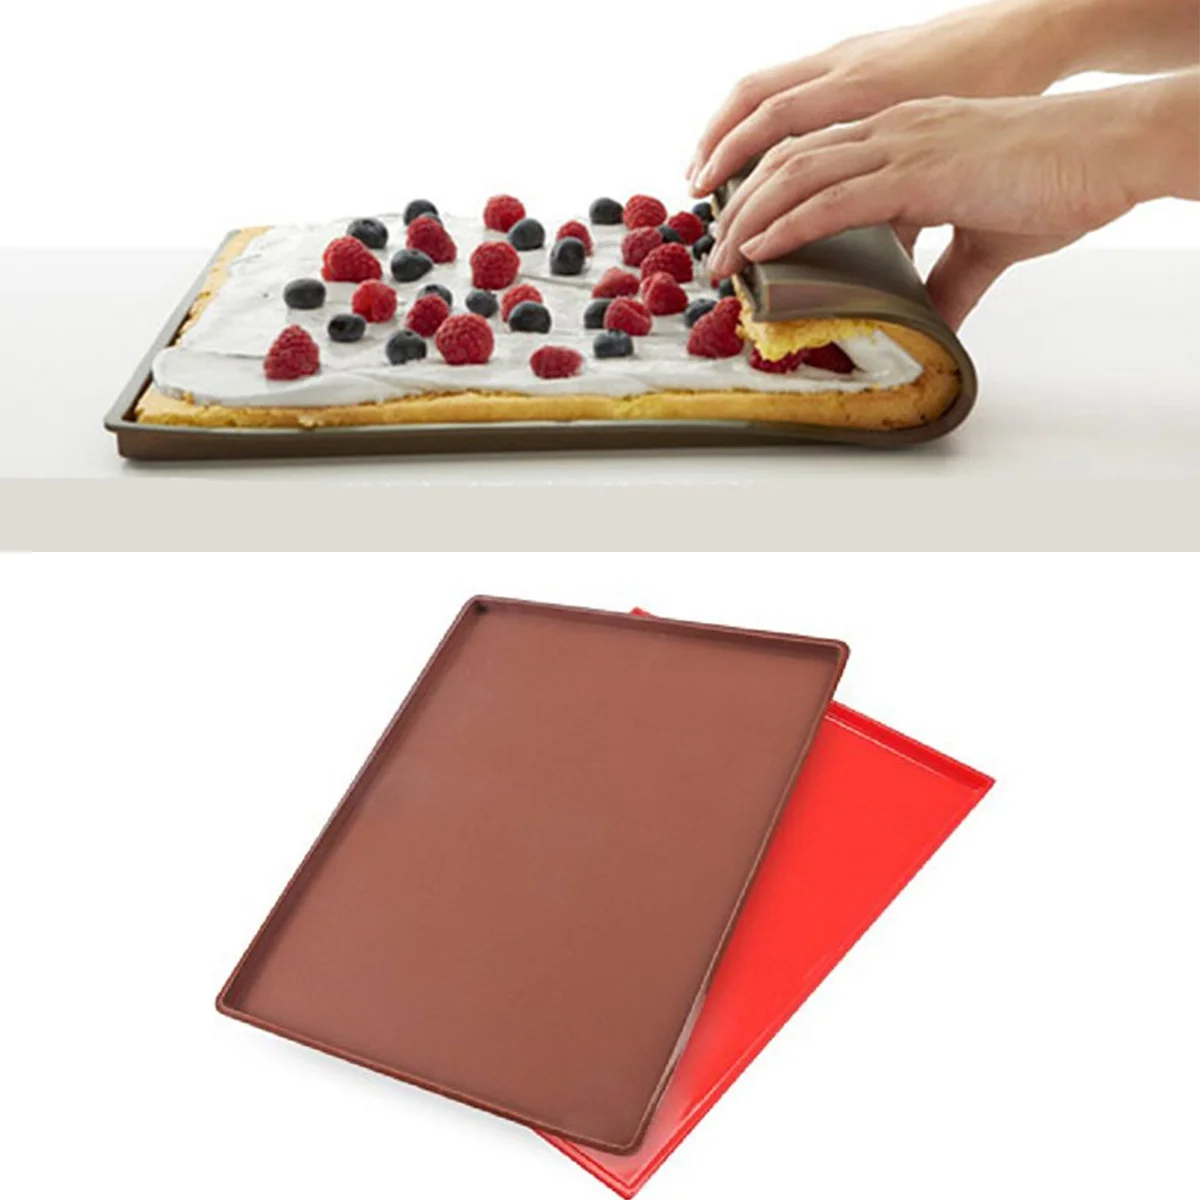 1 шт. антипригарная силиконовая подкладка для печки торт коврик для раскатки коврик для выпечки подкладка для торта рулон коврик для выпечки инструменты для выпечки Кухонные аксессуары